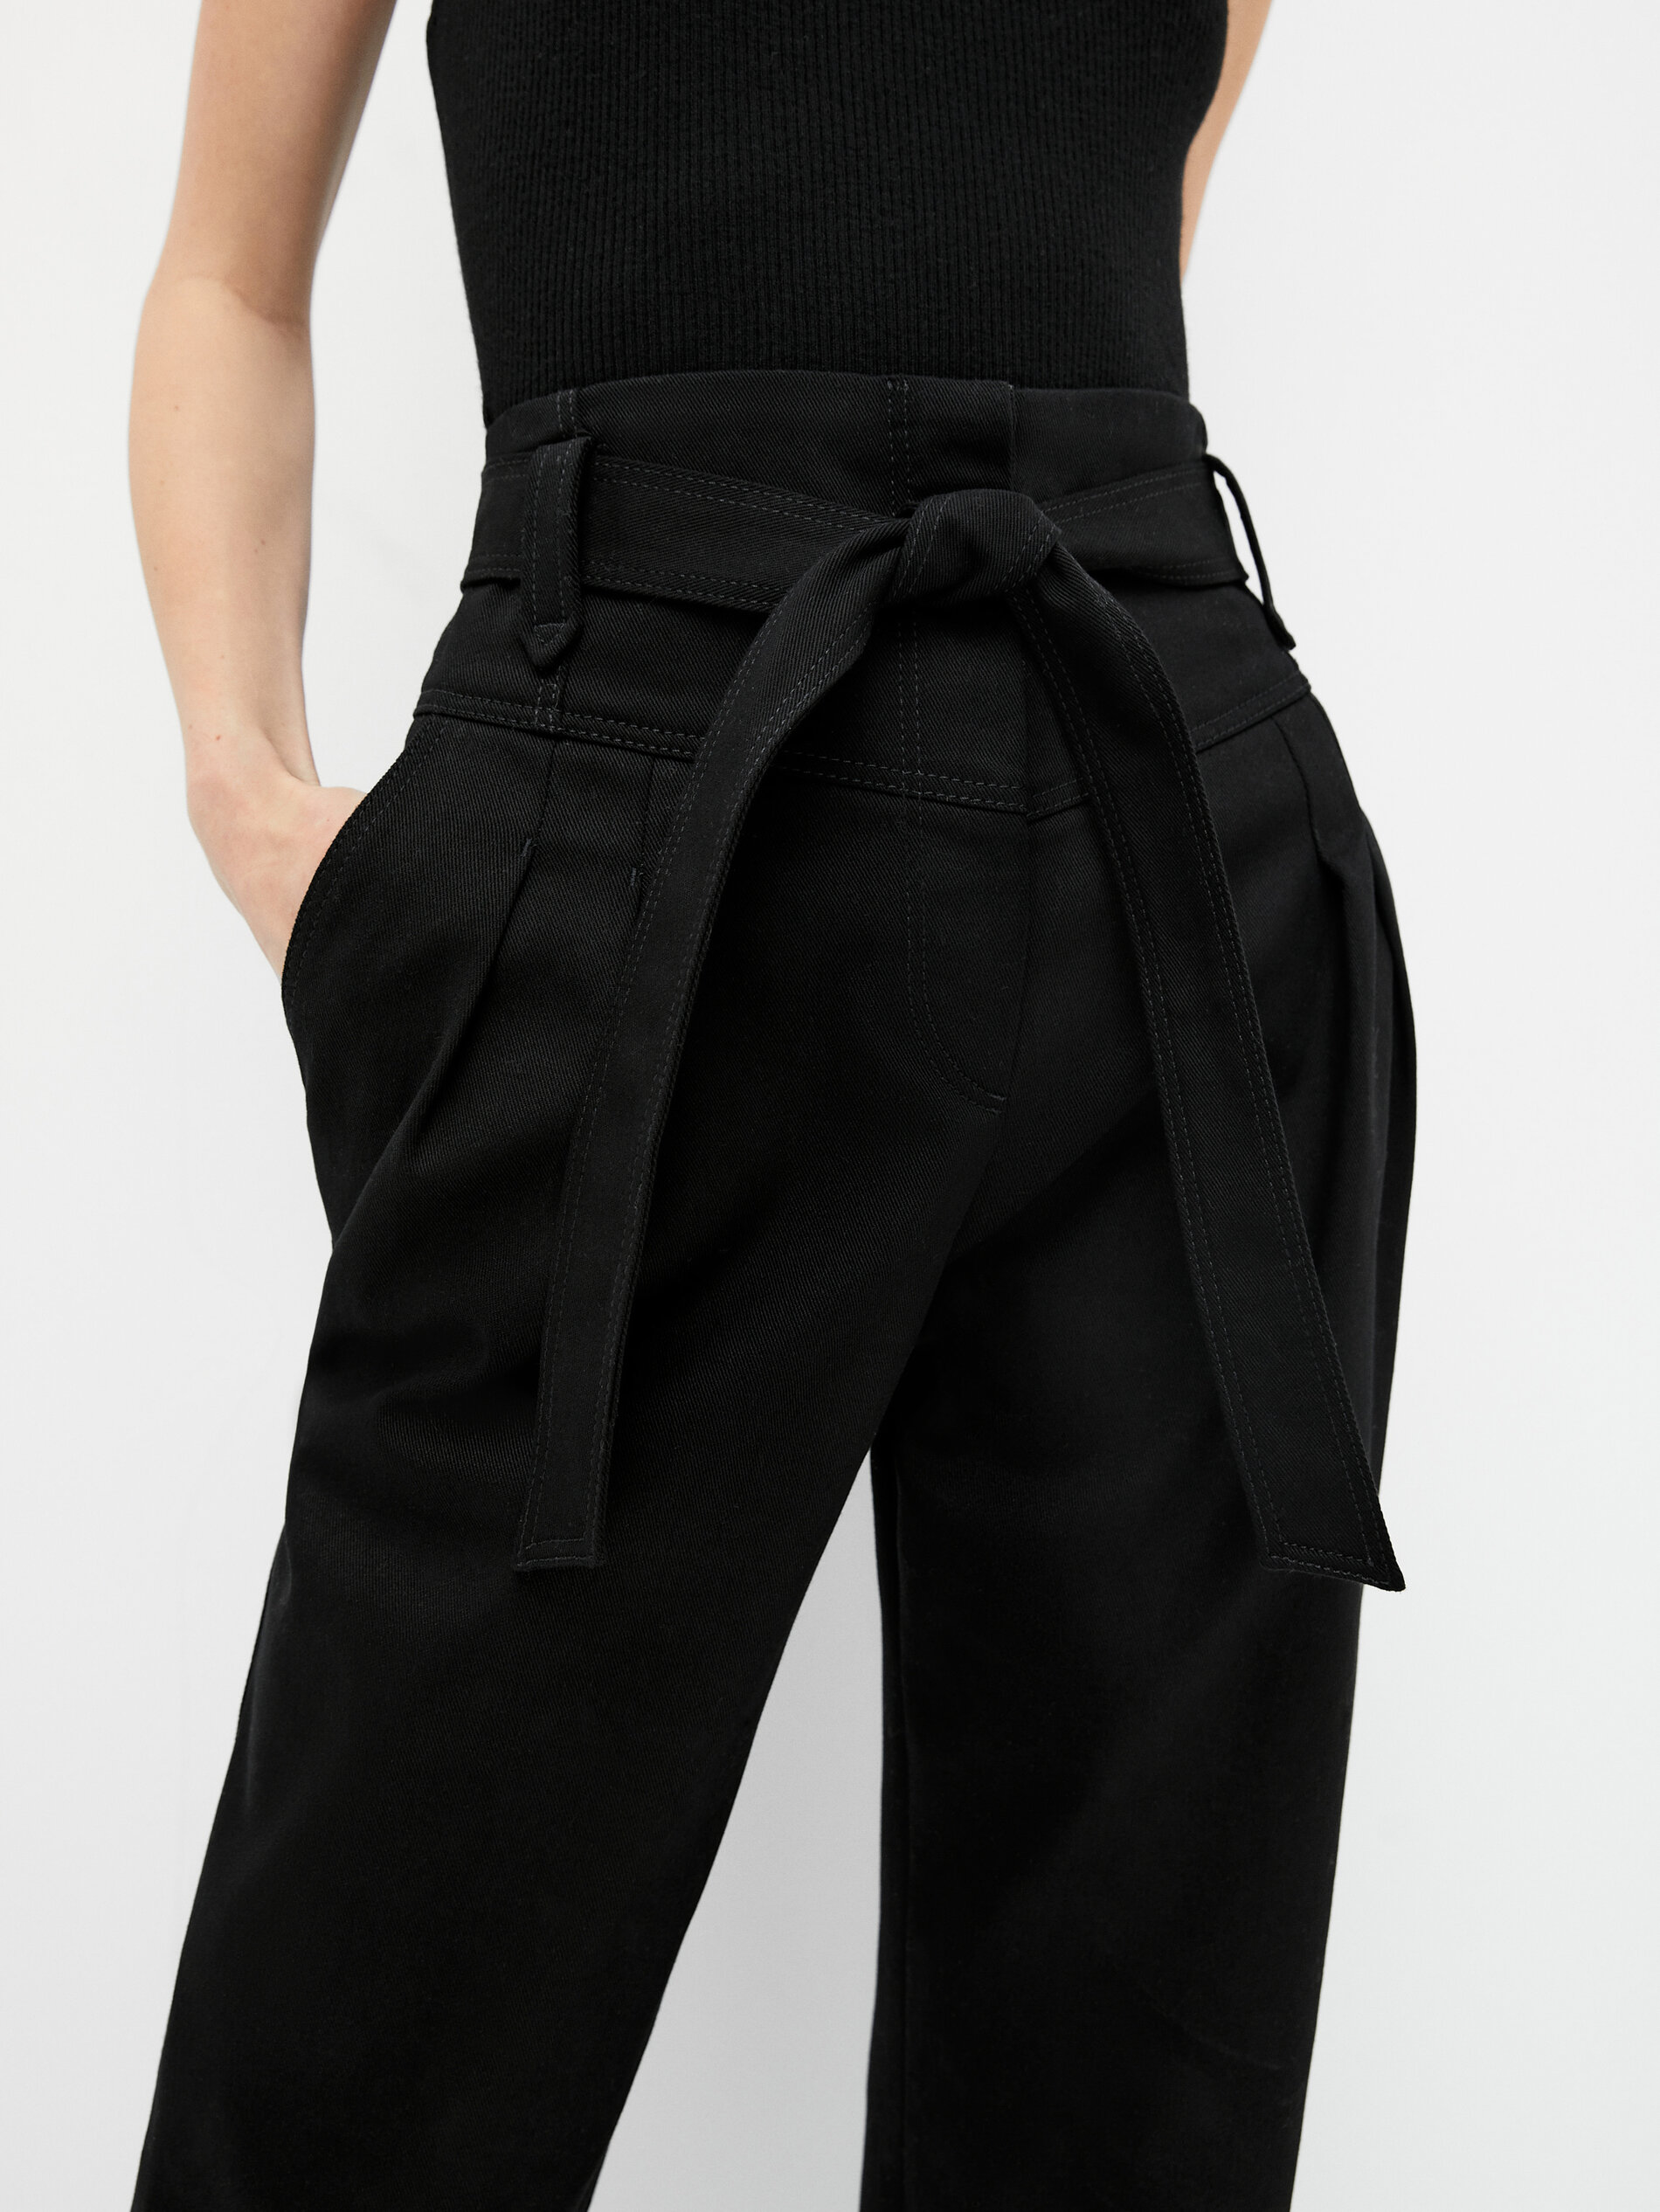 Παντελόνι με ραφή σε σχήμα V, πιέτες και ζώνη